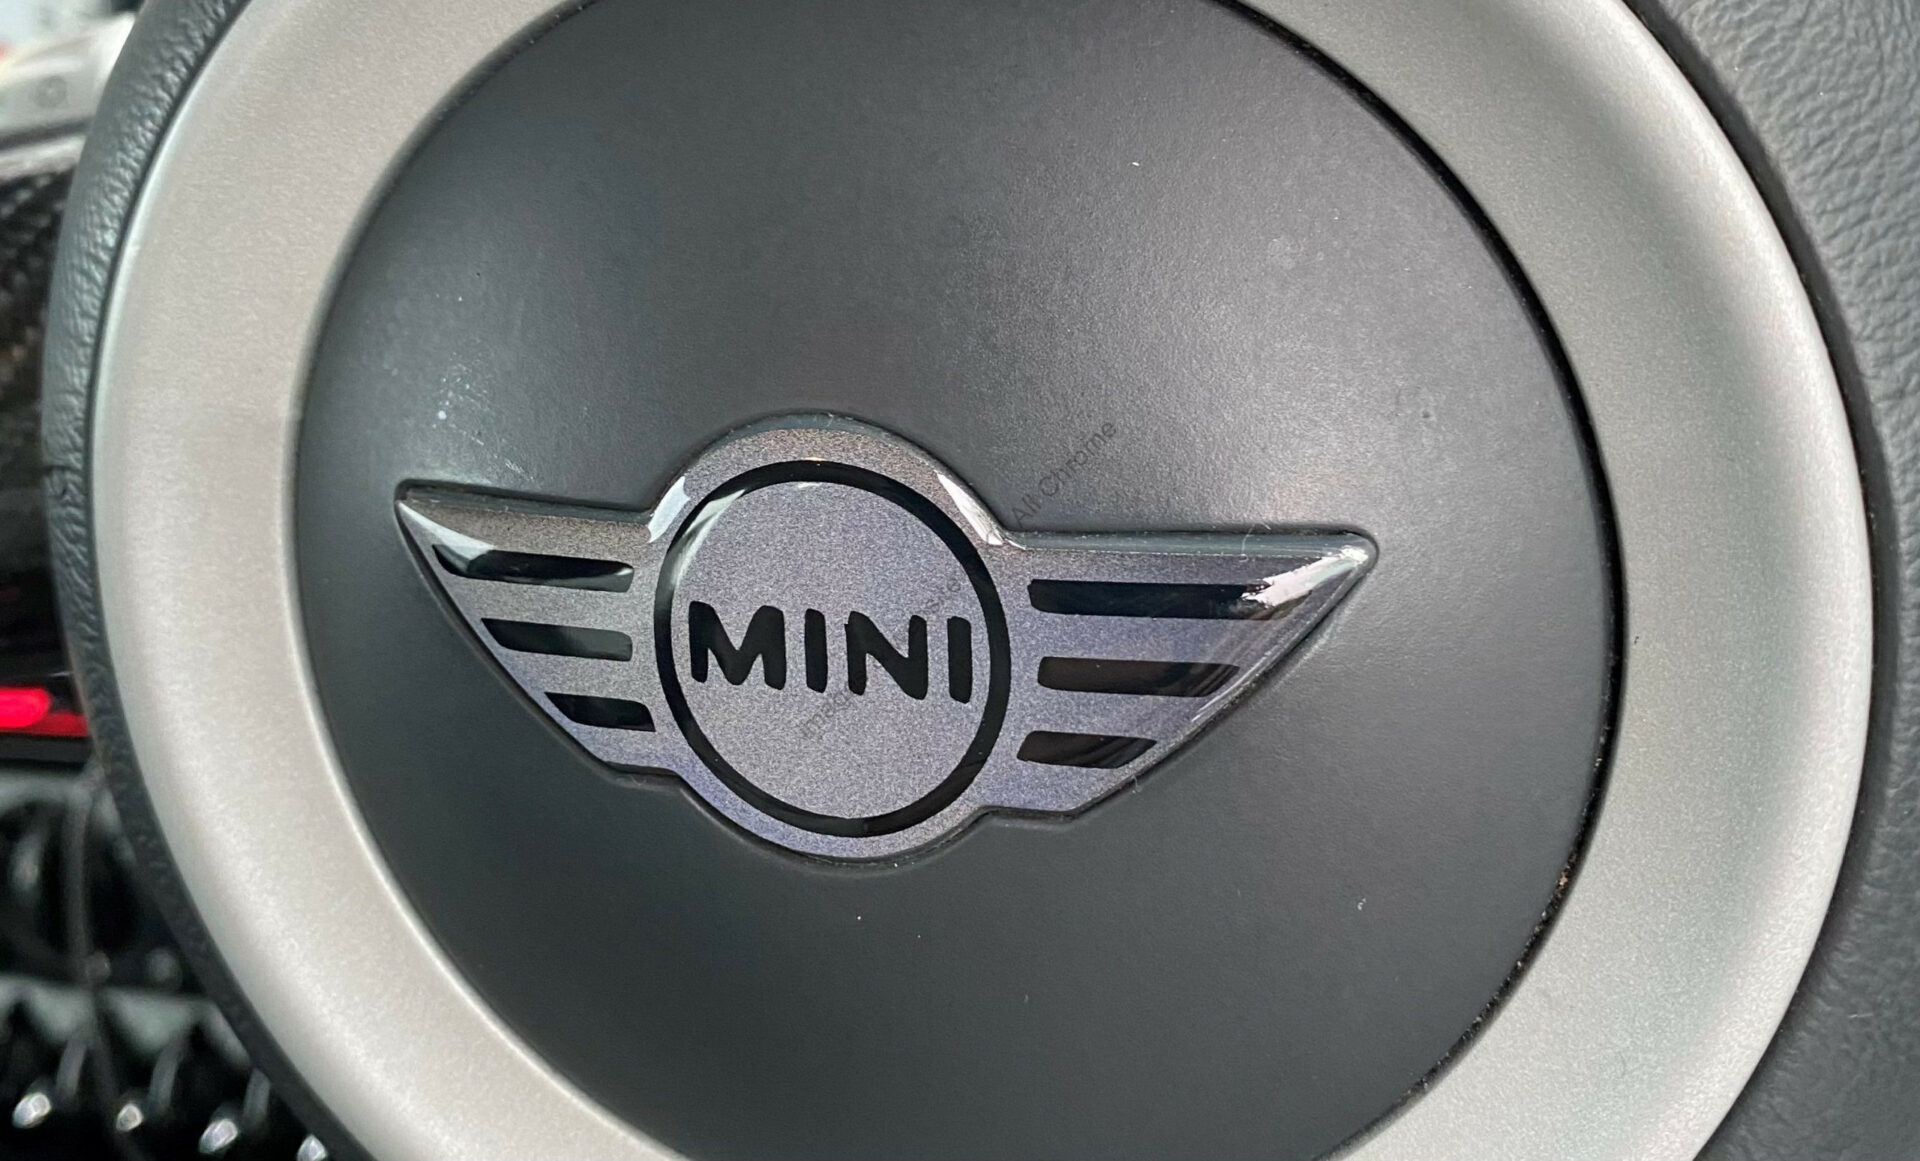 MINI Steering Wheel Gel Overlay Black & Yellow Gen 3 F54 F55 F56 F57 F60